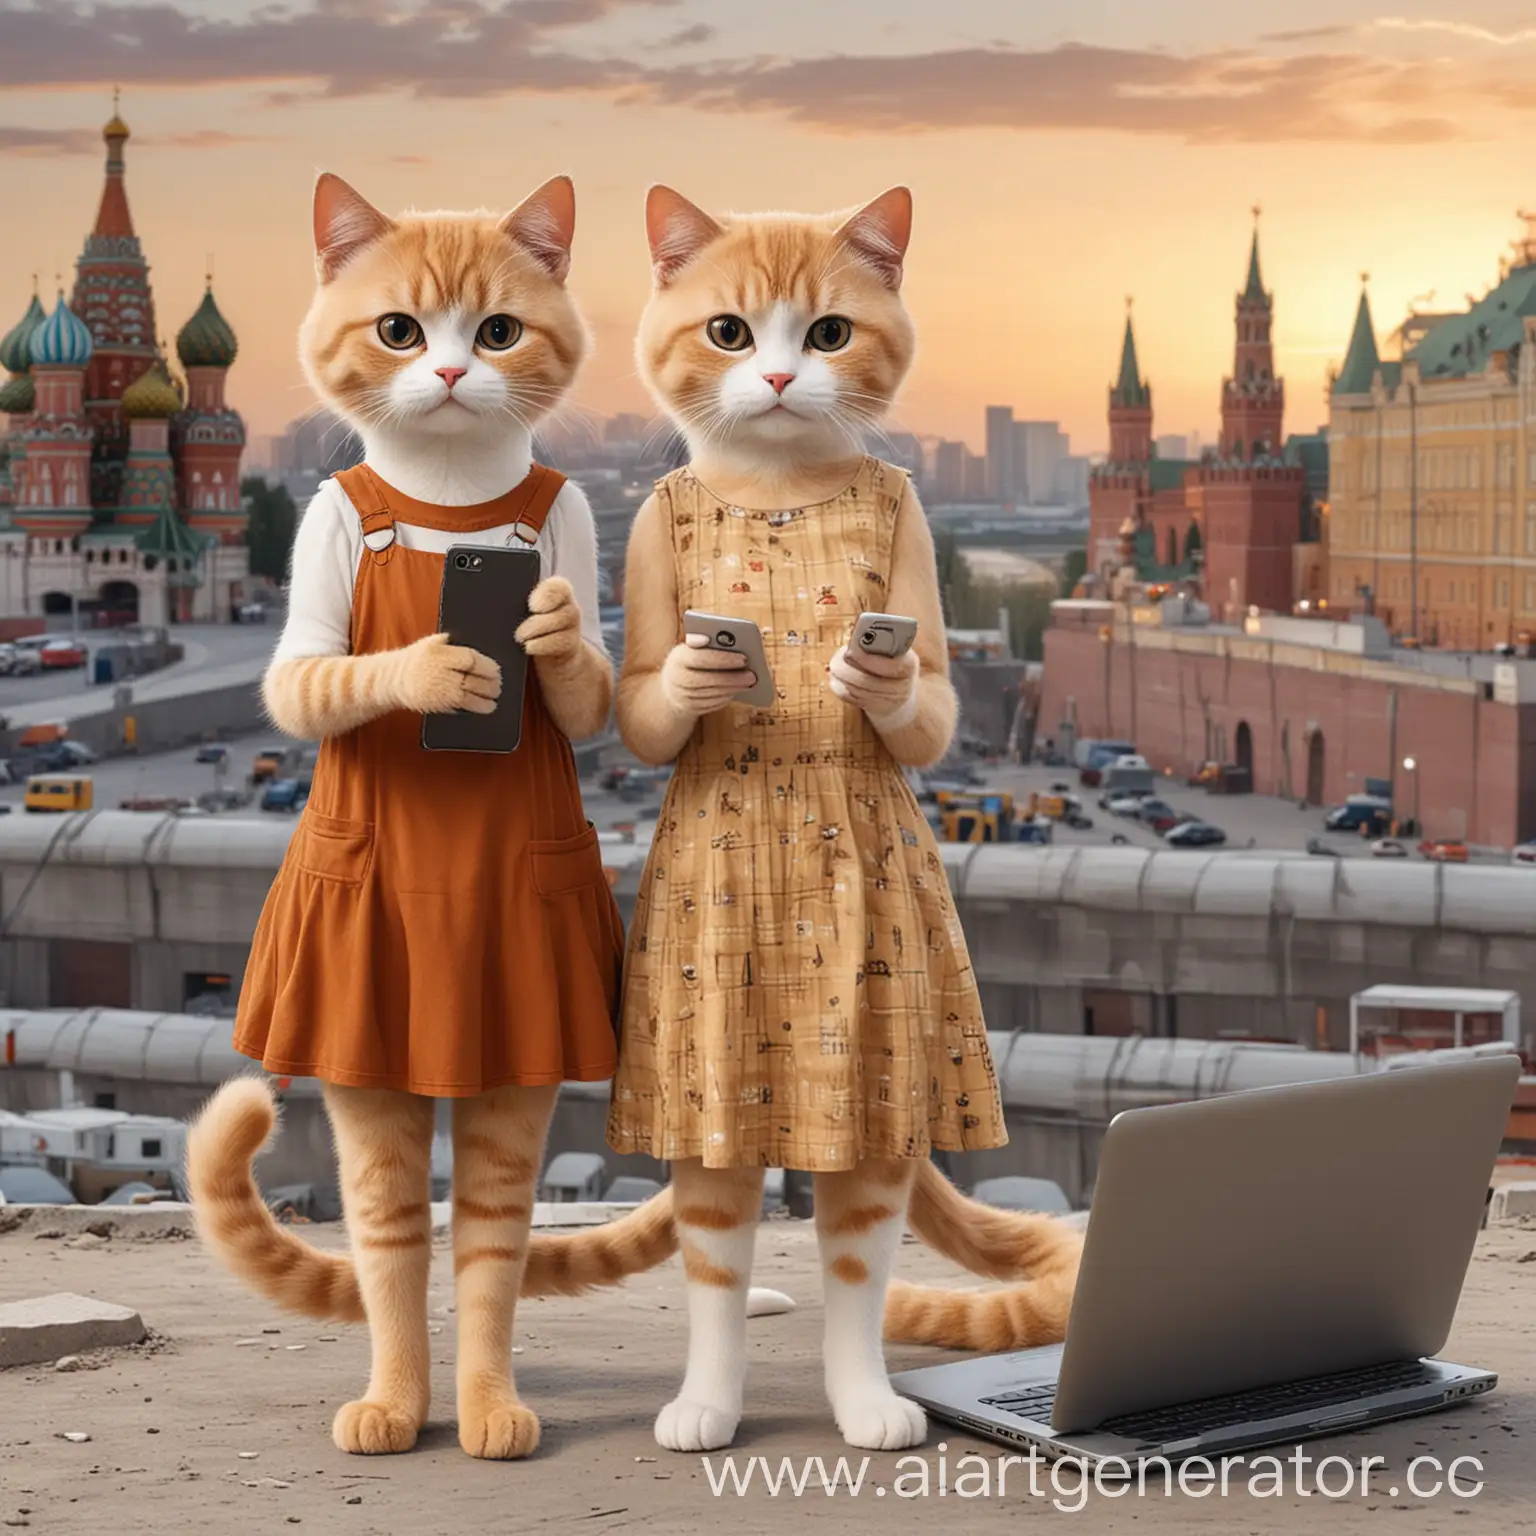 Картинка двух мультяшных котиков , один котик большой и высокий женского рода с короткой стрижкой и коричневыми волосами в платье и телефоном, второй котик маленький с длинными и светлыми волосами и ноутбуком на фоне города Москва и стройка
